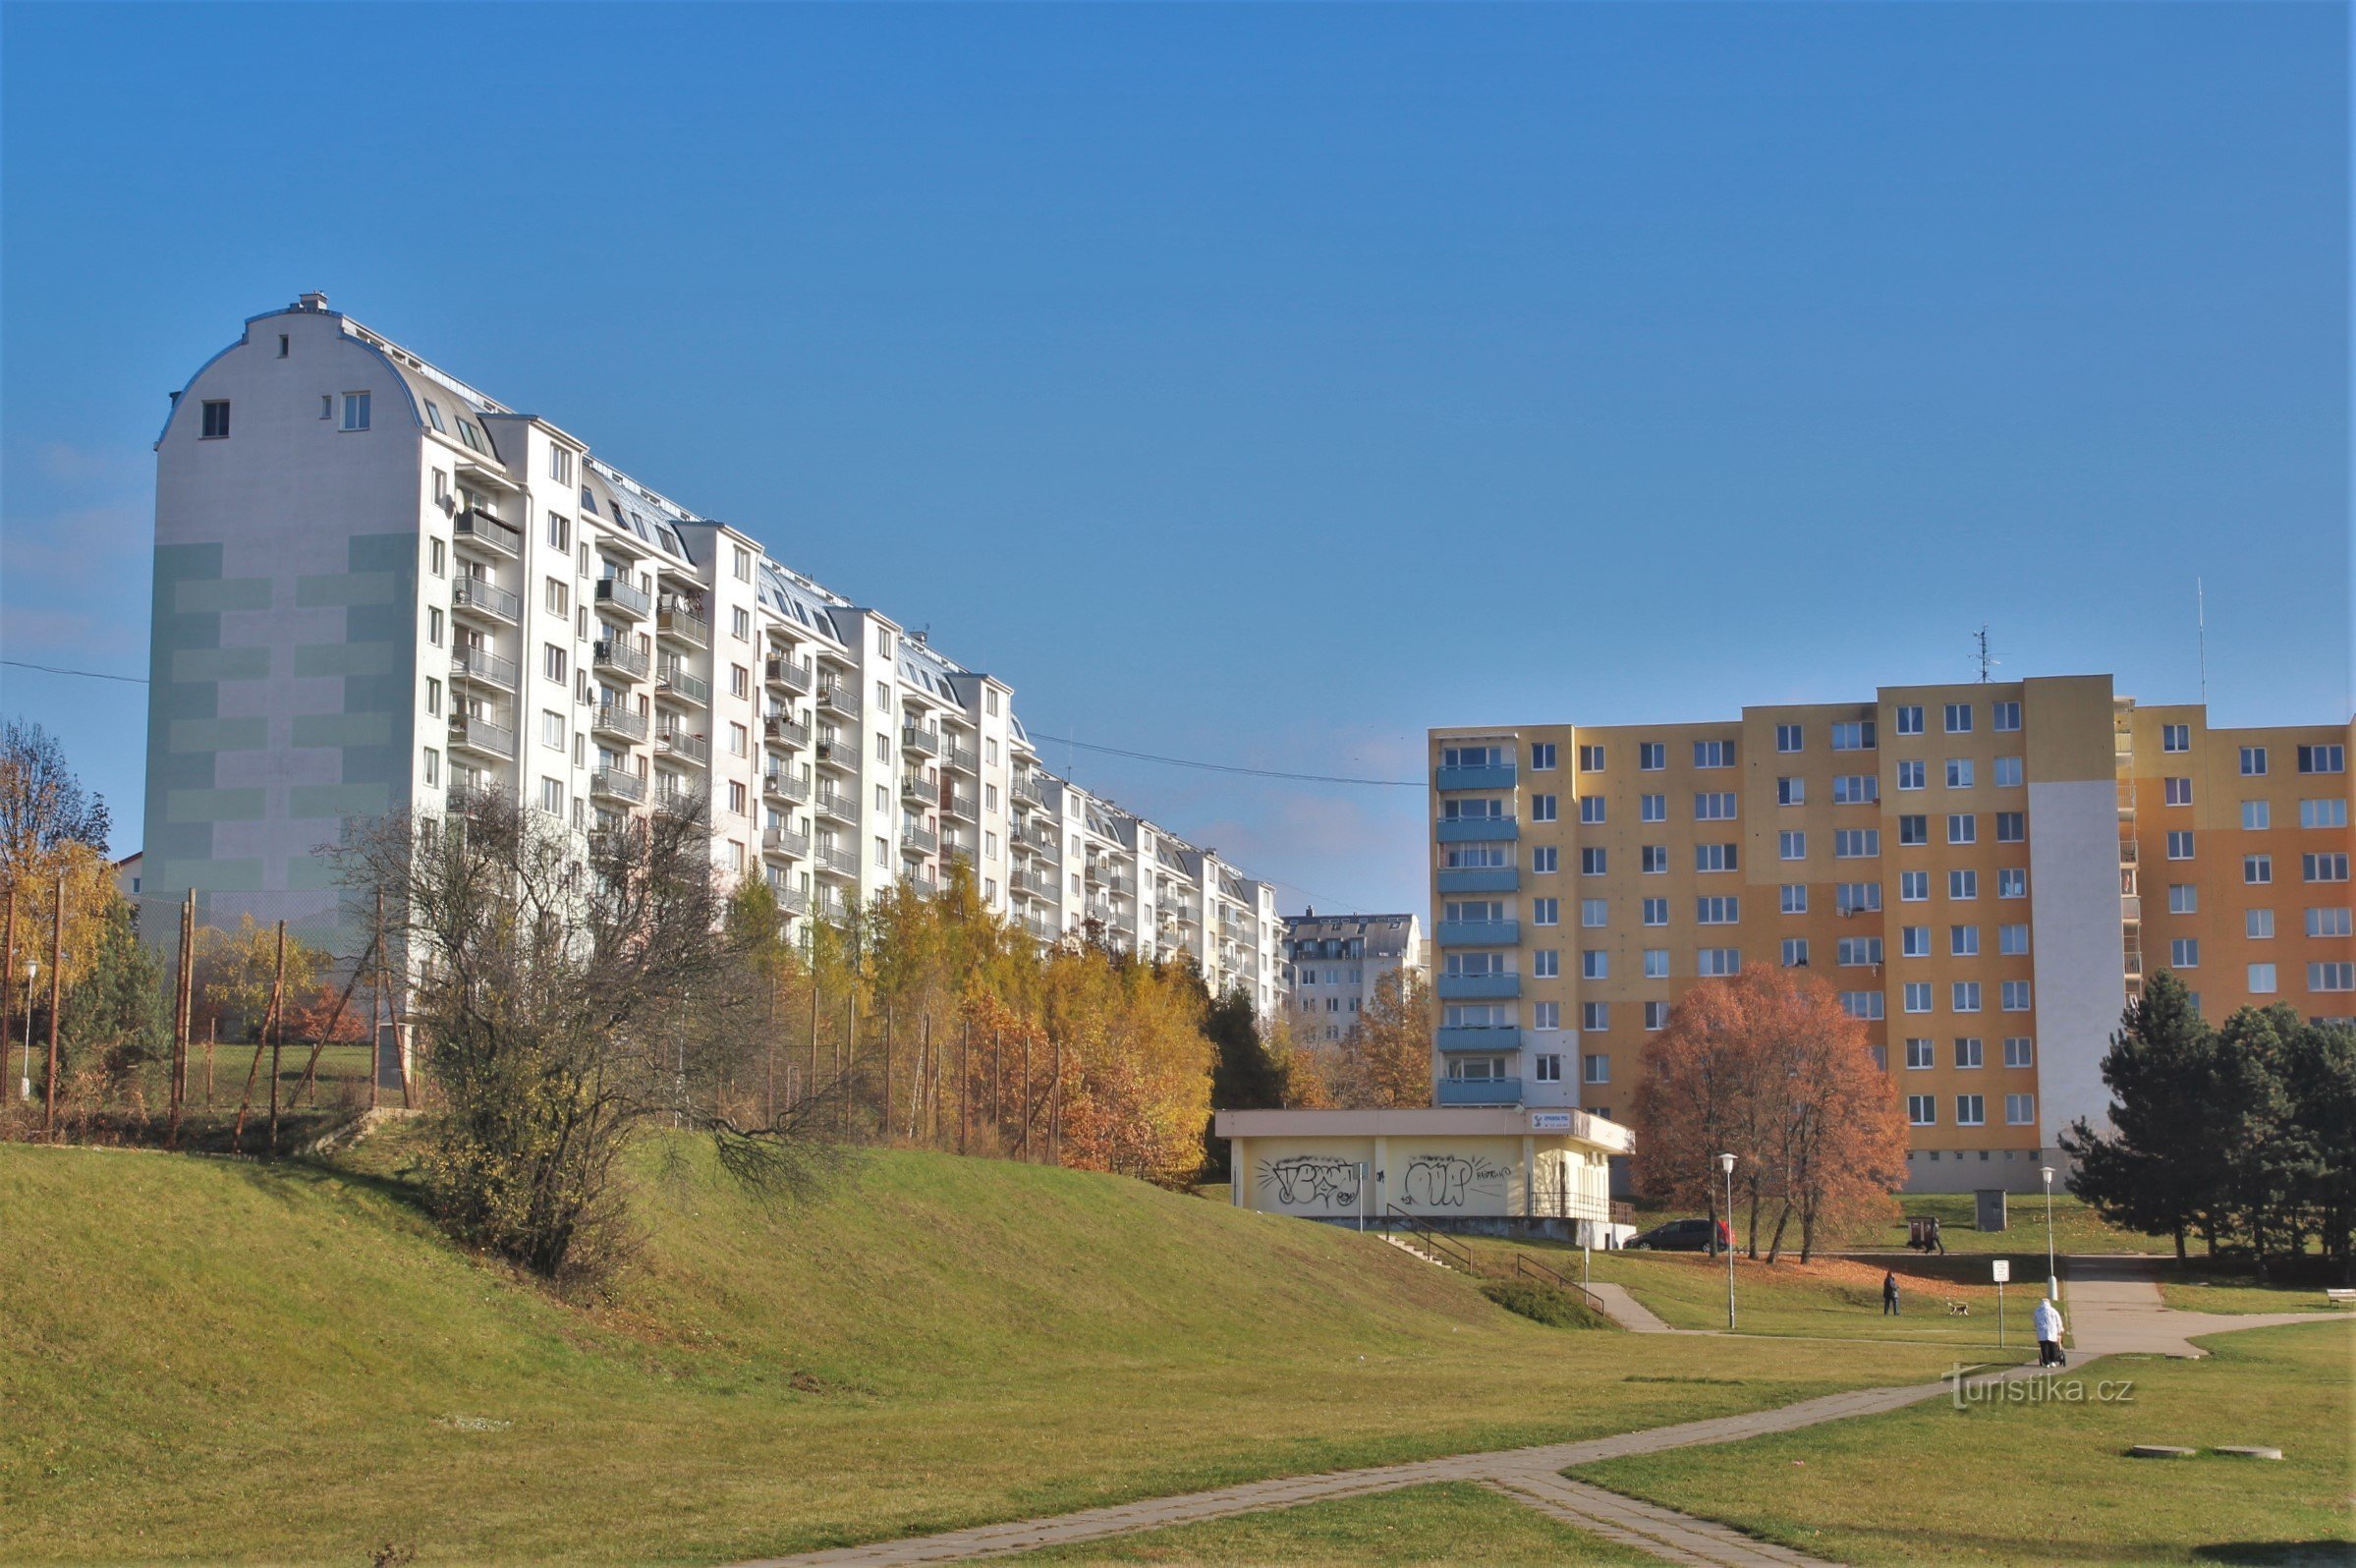 El comienzo de la ruta pasa por la urbanización de Lišeň